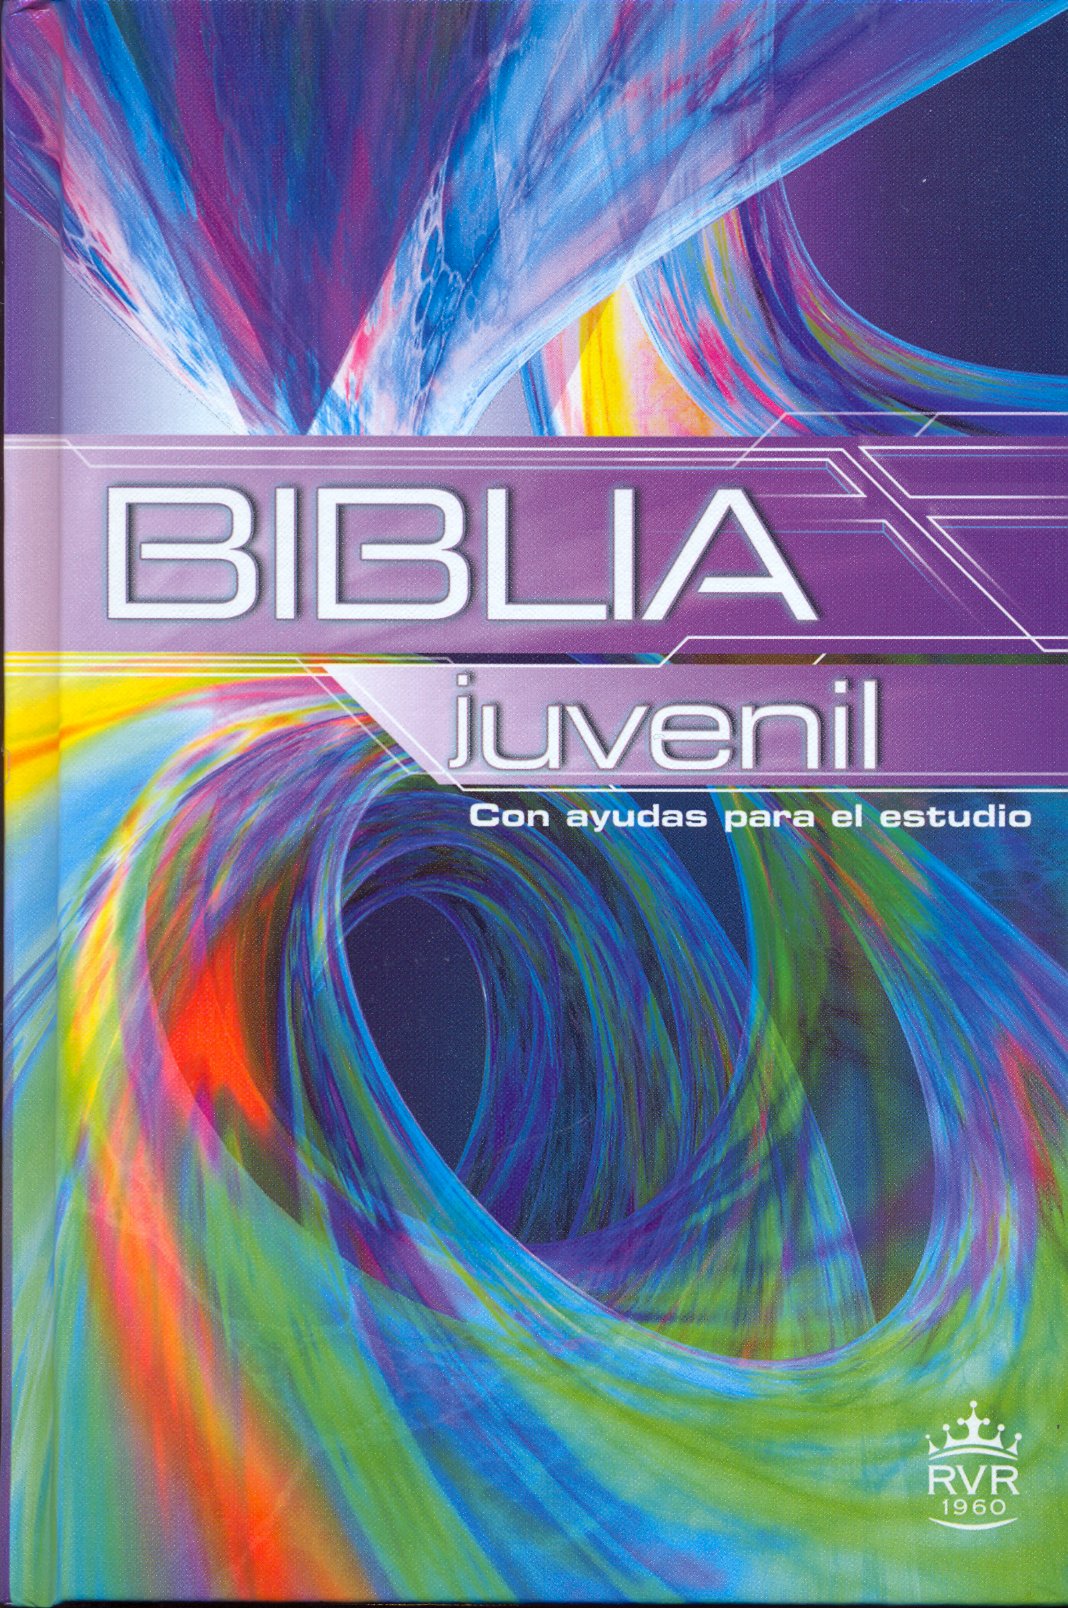 ESPAGNOL BIBLE RVR JUVENIL - THE YOUTH BIBLE